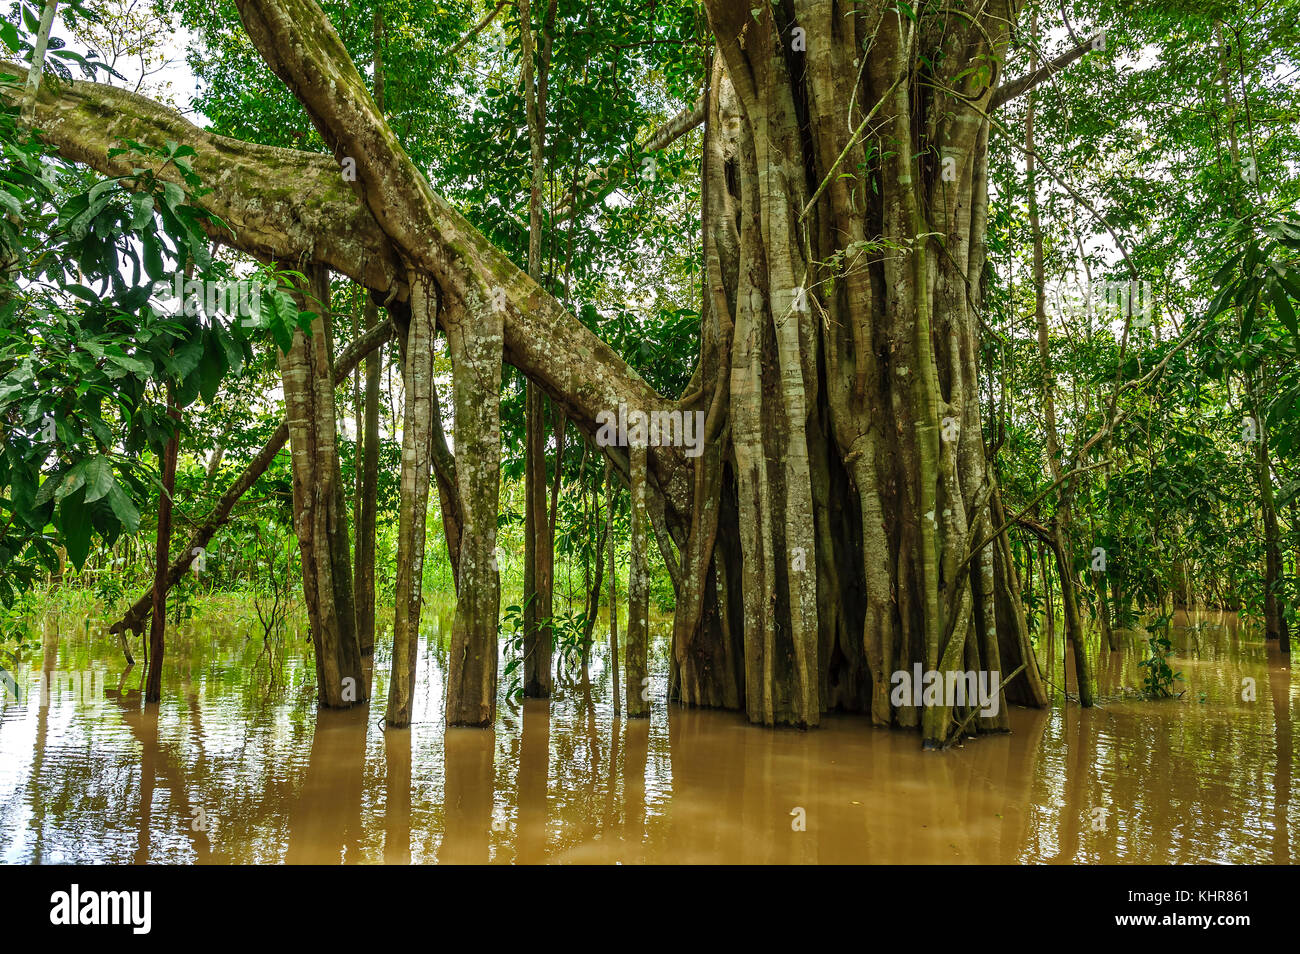 Higo (Ficus sp) con raíces de pilotes expuestas en el bosque inundado del Amazonas, Parque Nacional Amacayacu, Leticia, Colombia Foto de stock